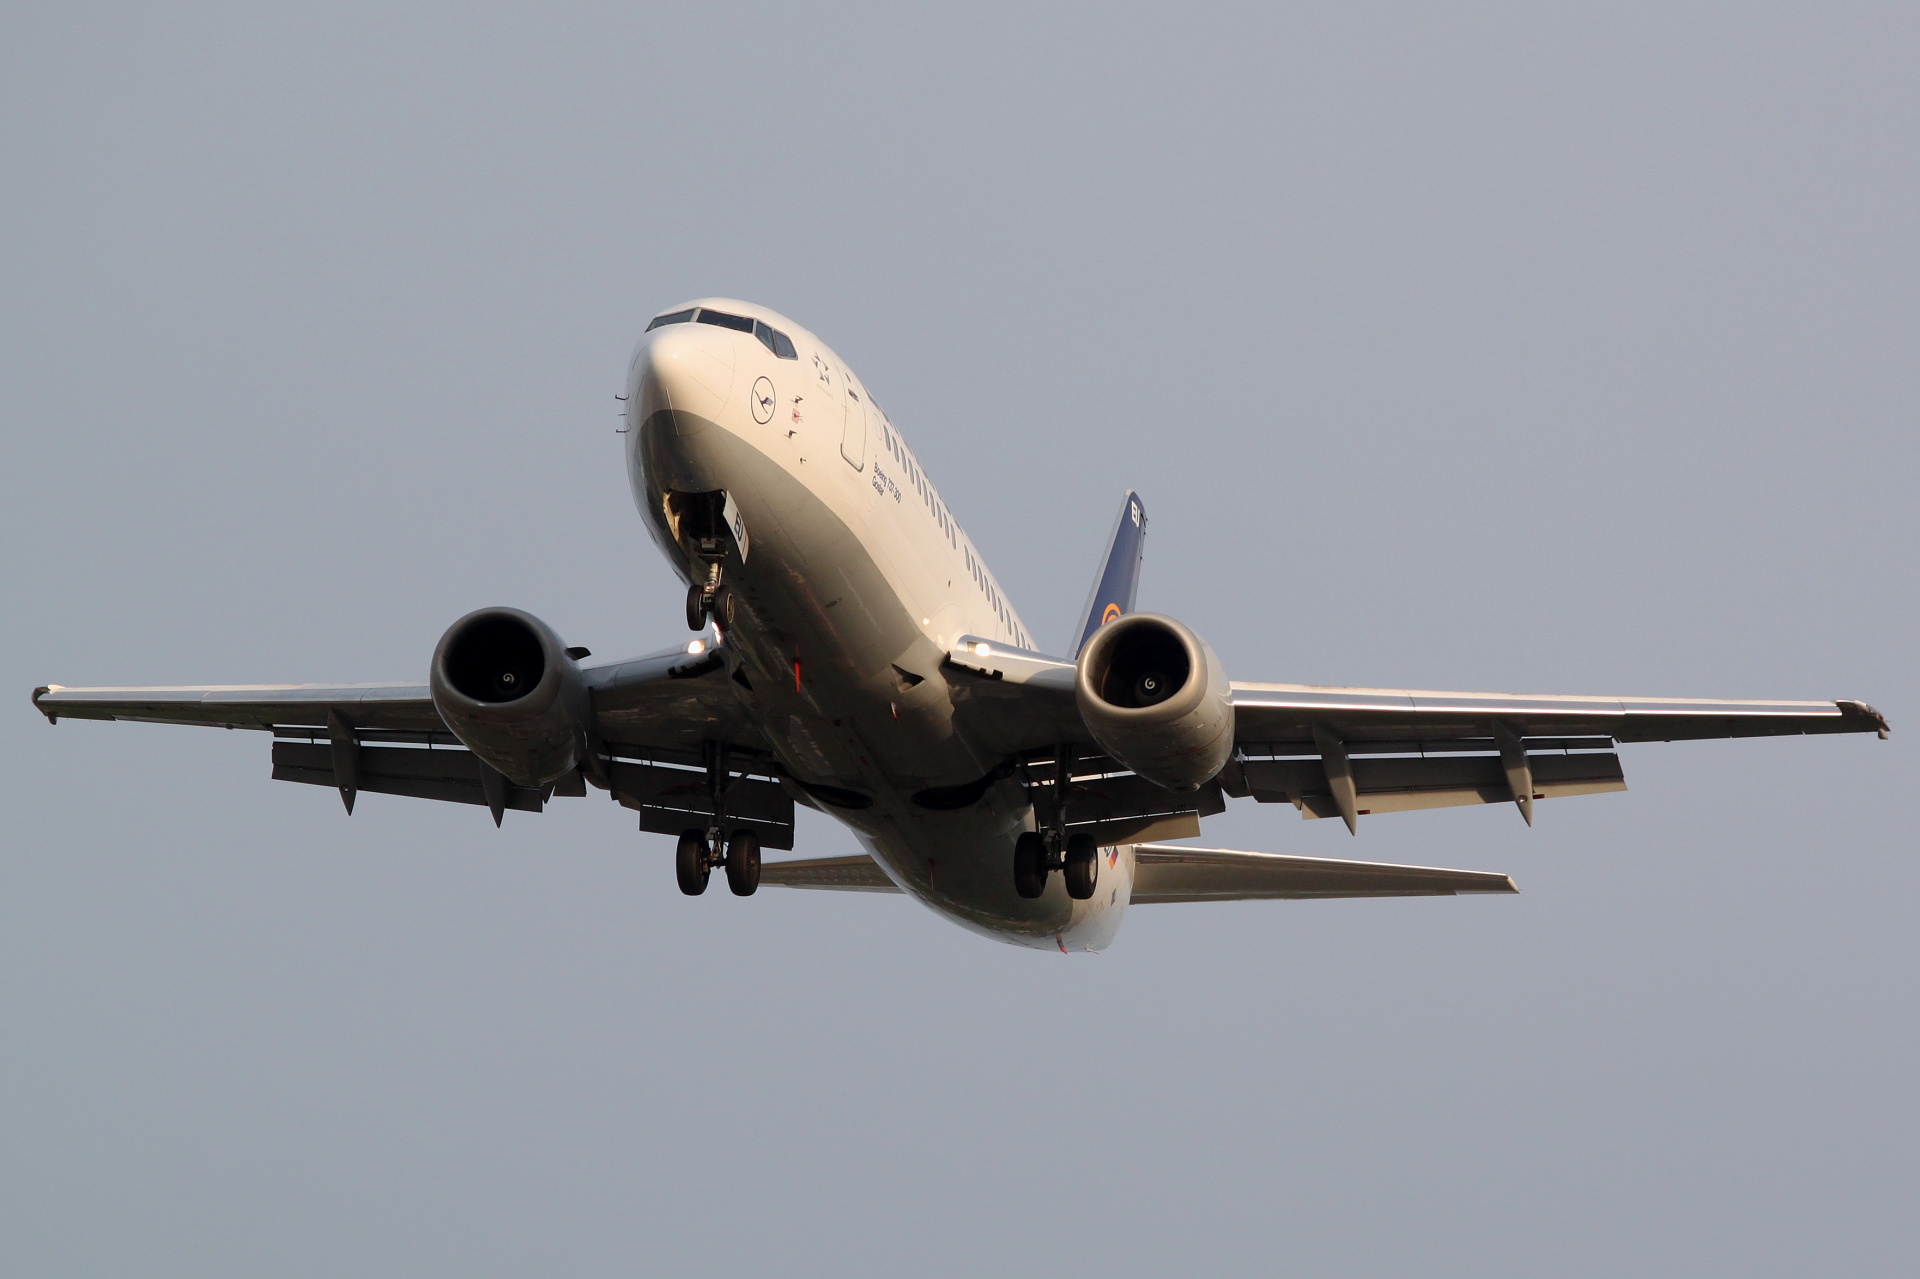 D-ABEU (Aircraft » EPWA Spotting » Boeing 737-300 » Lufthansa)